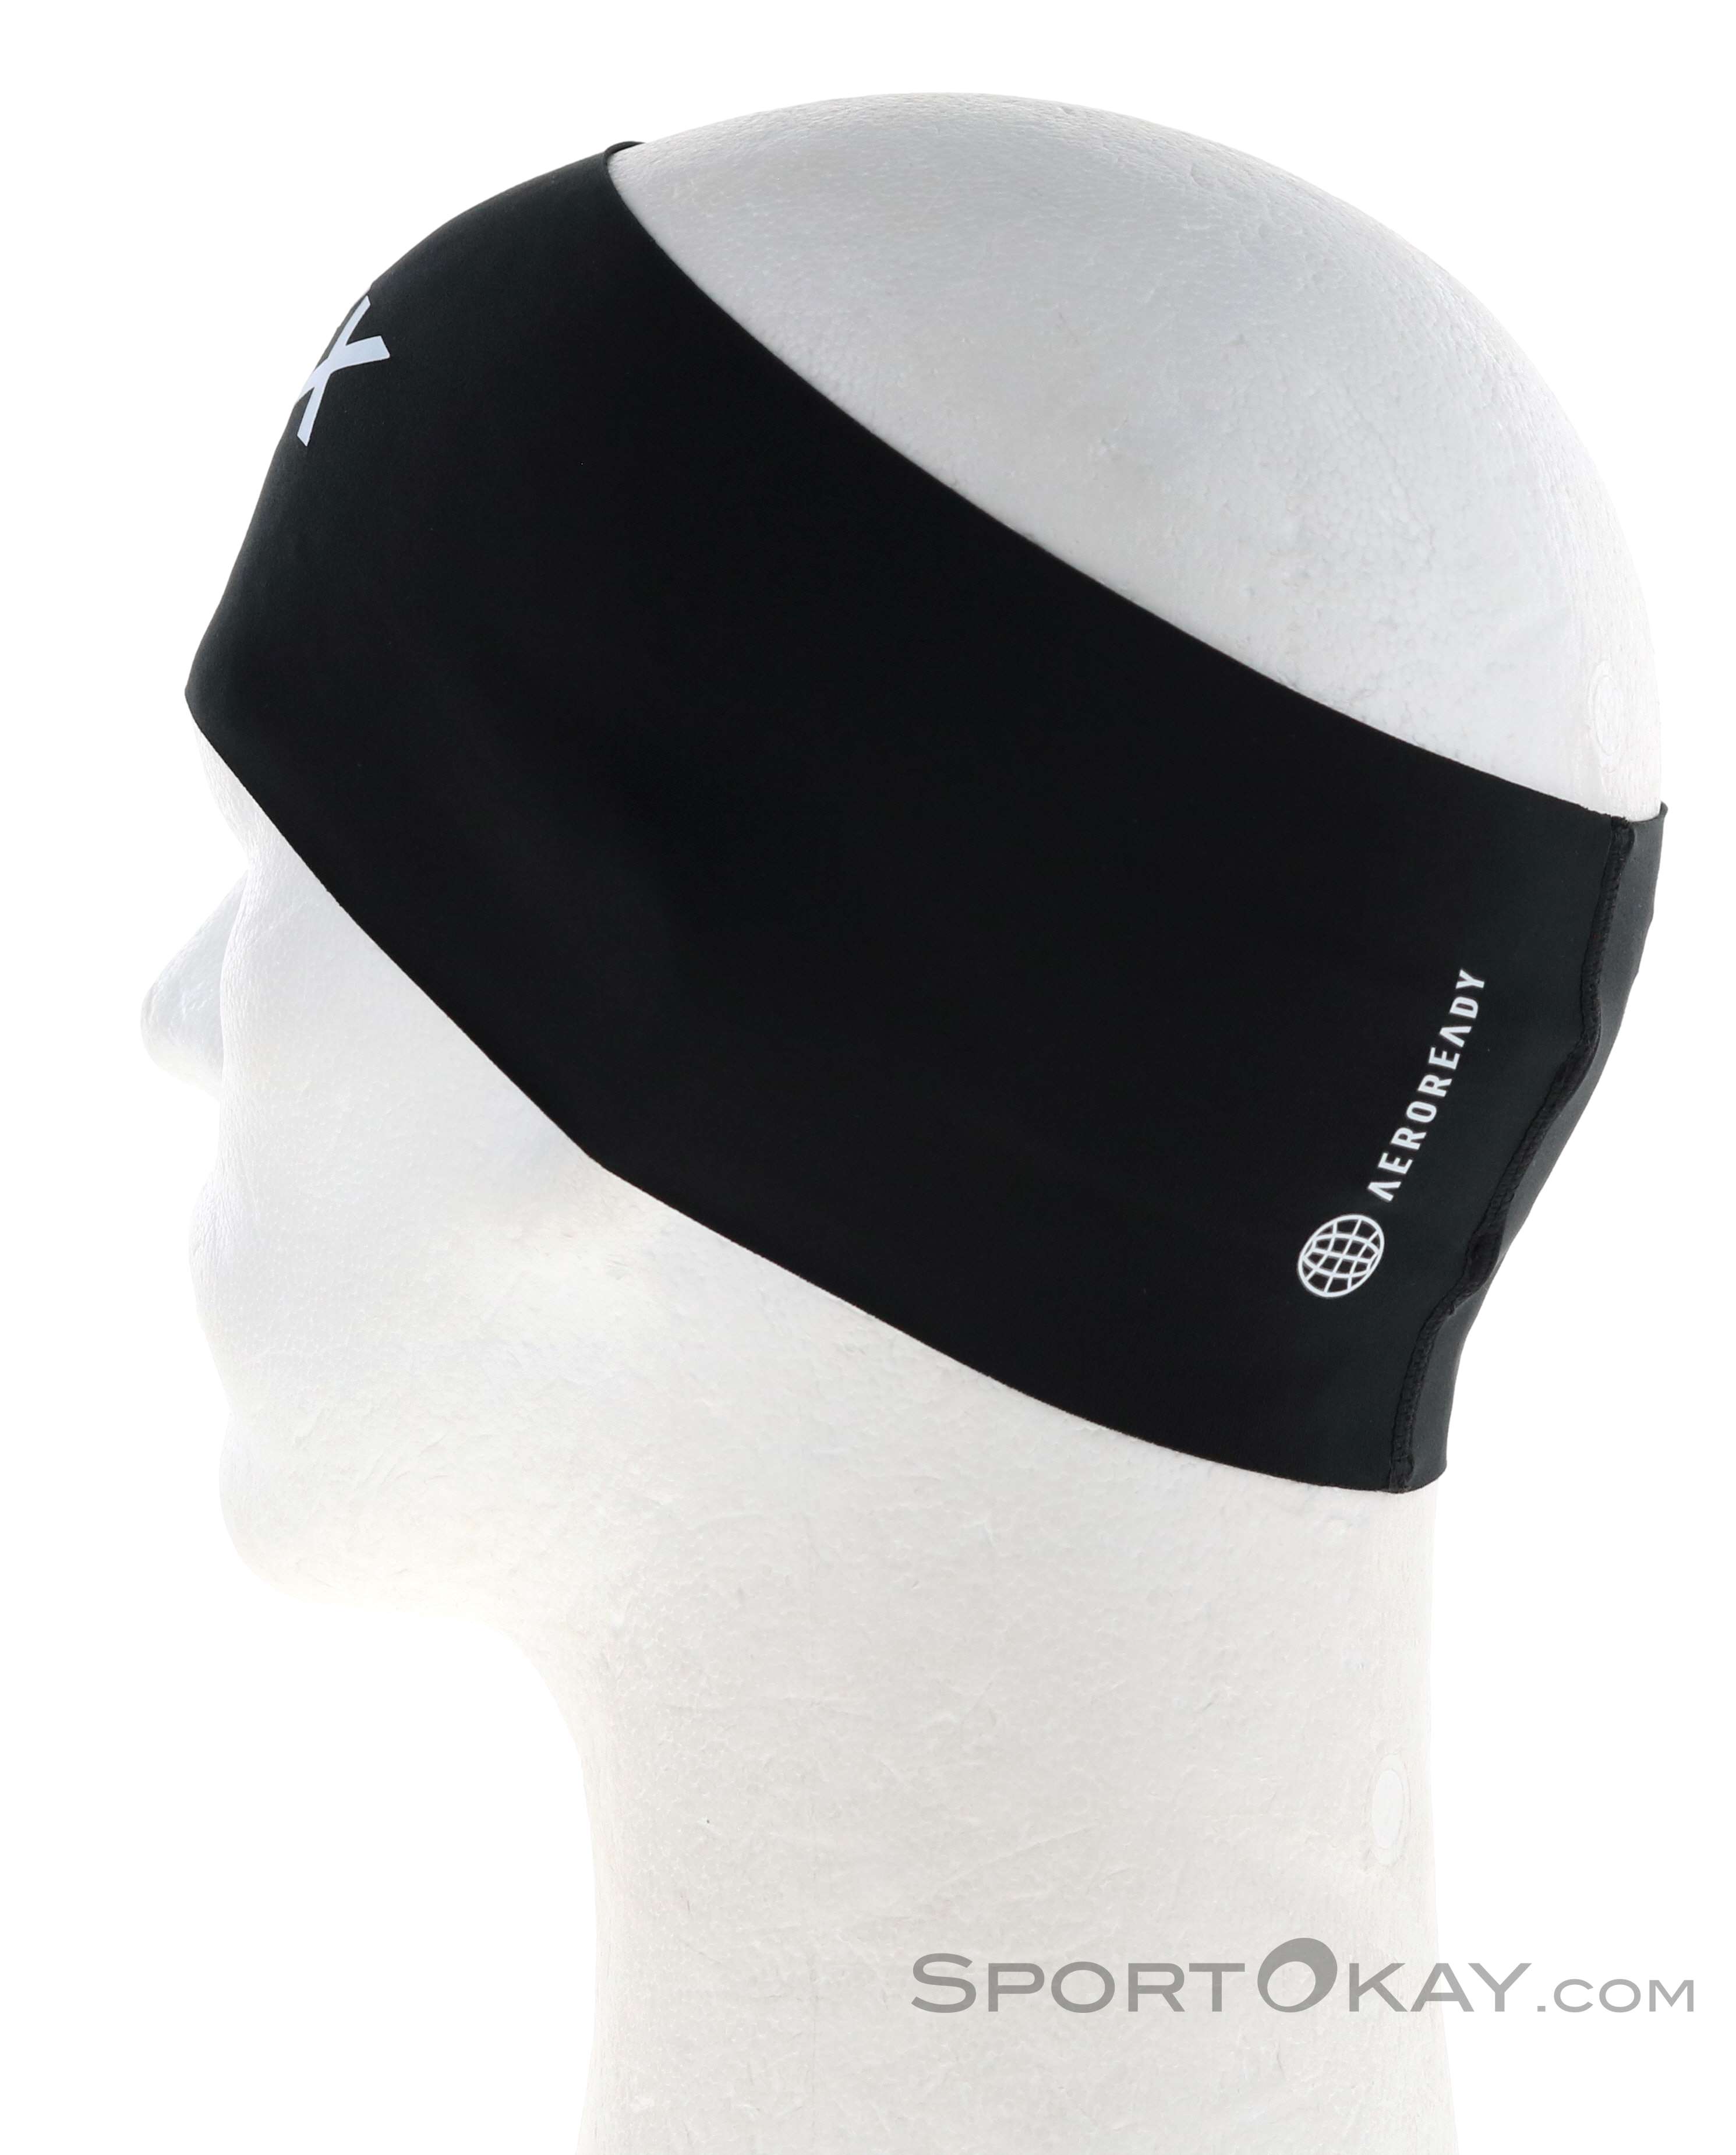 Headband Mützen Alle - - Terrex & Outdoor Outdoorbekleidung Stirnband adidas Stirnbänder - -